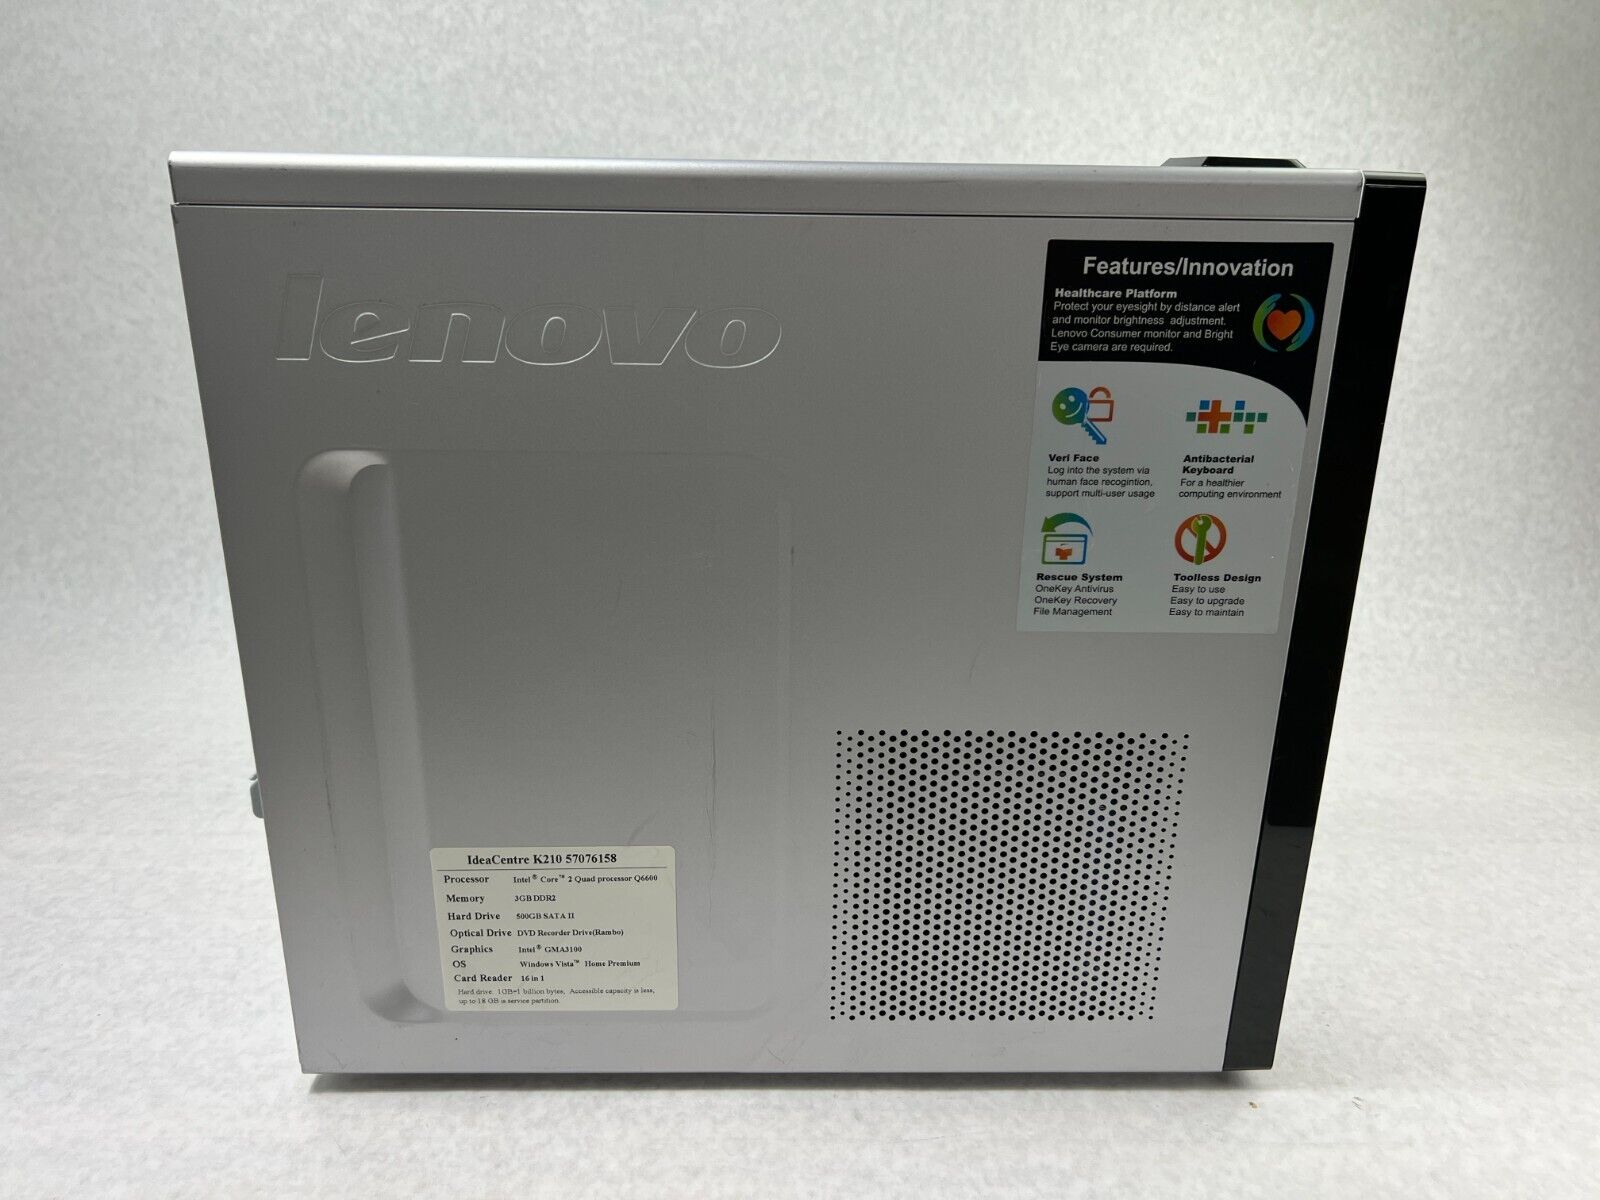 Lenovo IdeaCentre K210 MT Intel Core 2 Quad-6600 2.4GHz 3GB RAM No HDD No OS